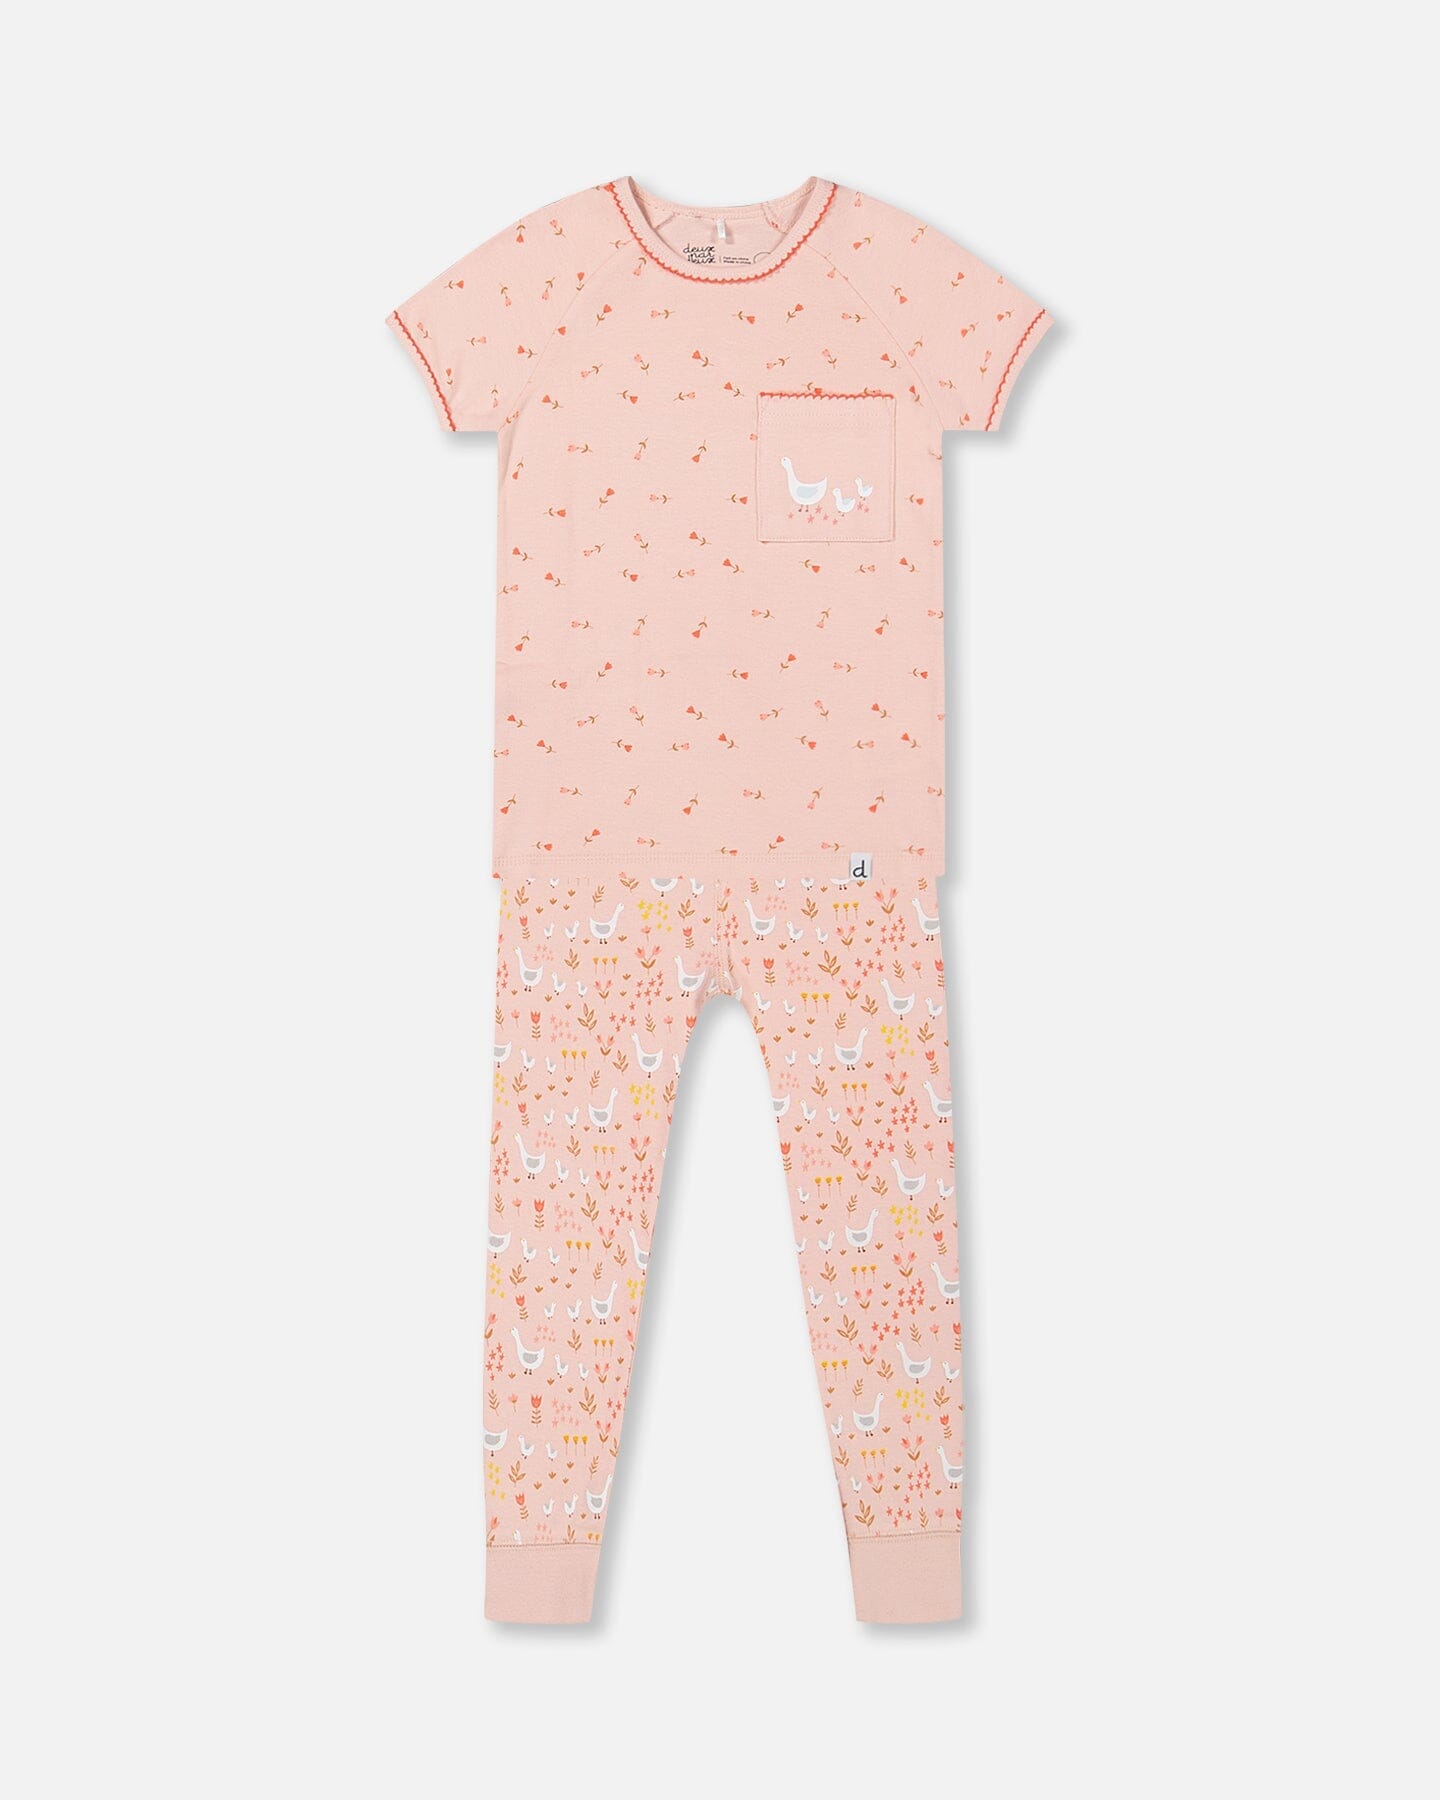 Ensemble pyjama deux pièces en coton bio rose imprimé oie - f30pg13us_069